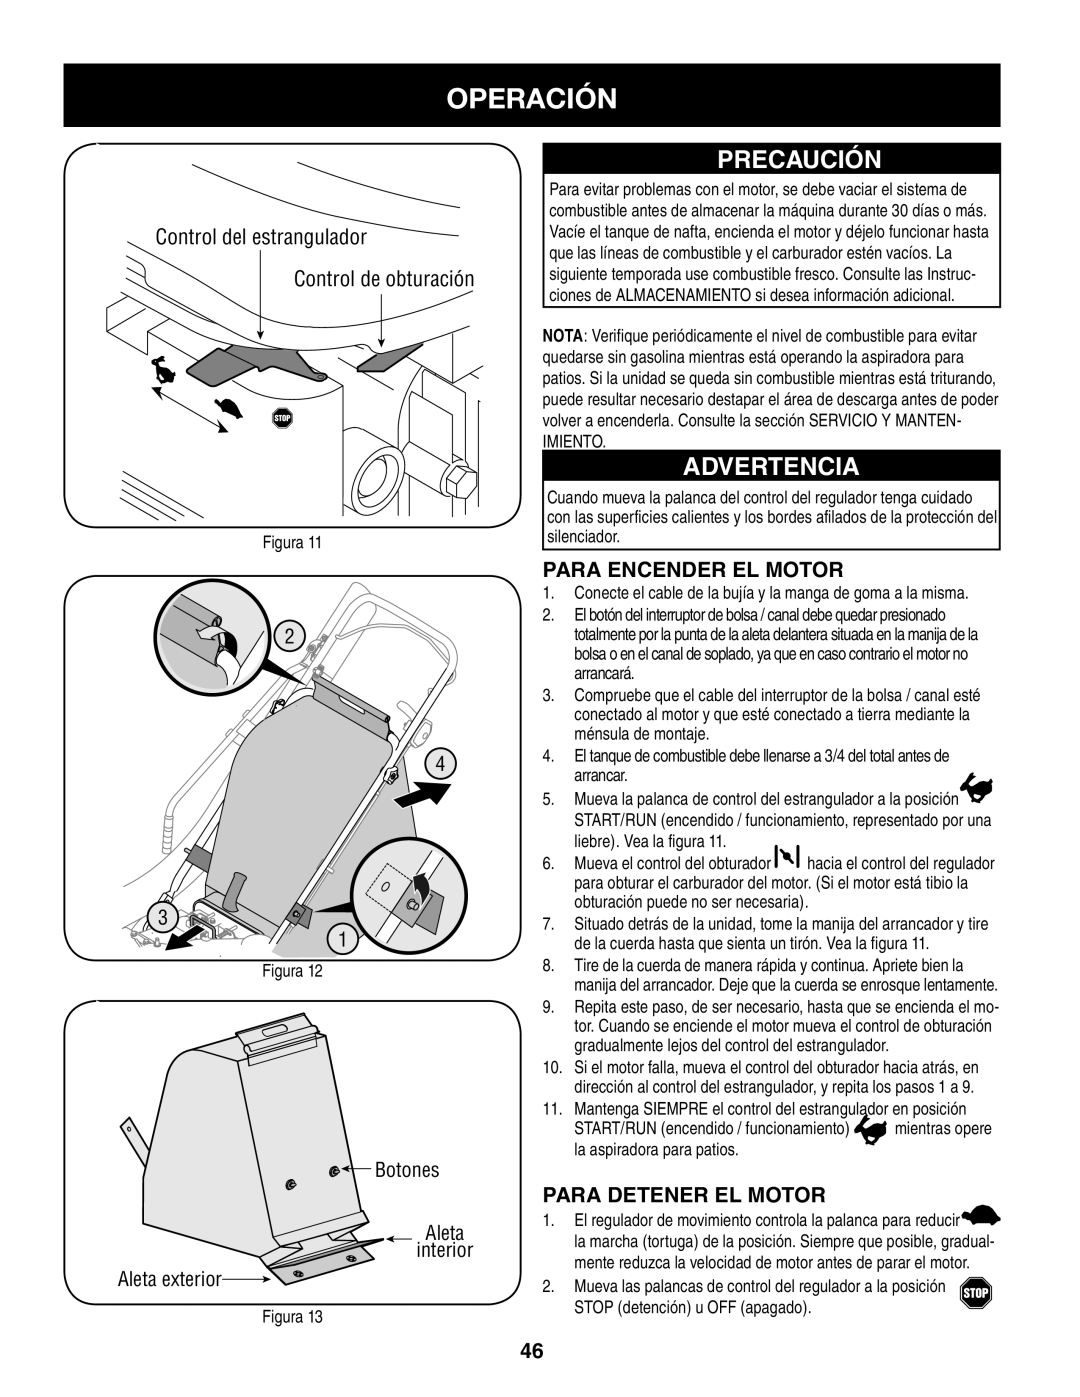 Craftsman 247.77013.0 manual Operación, Precaución, Advertencia, Para Encender El Motor, Para Detener El Motor, Botones 